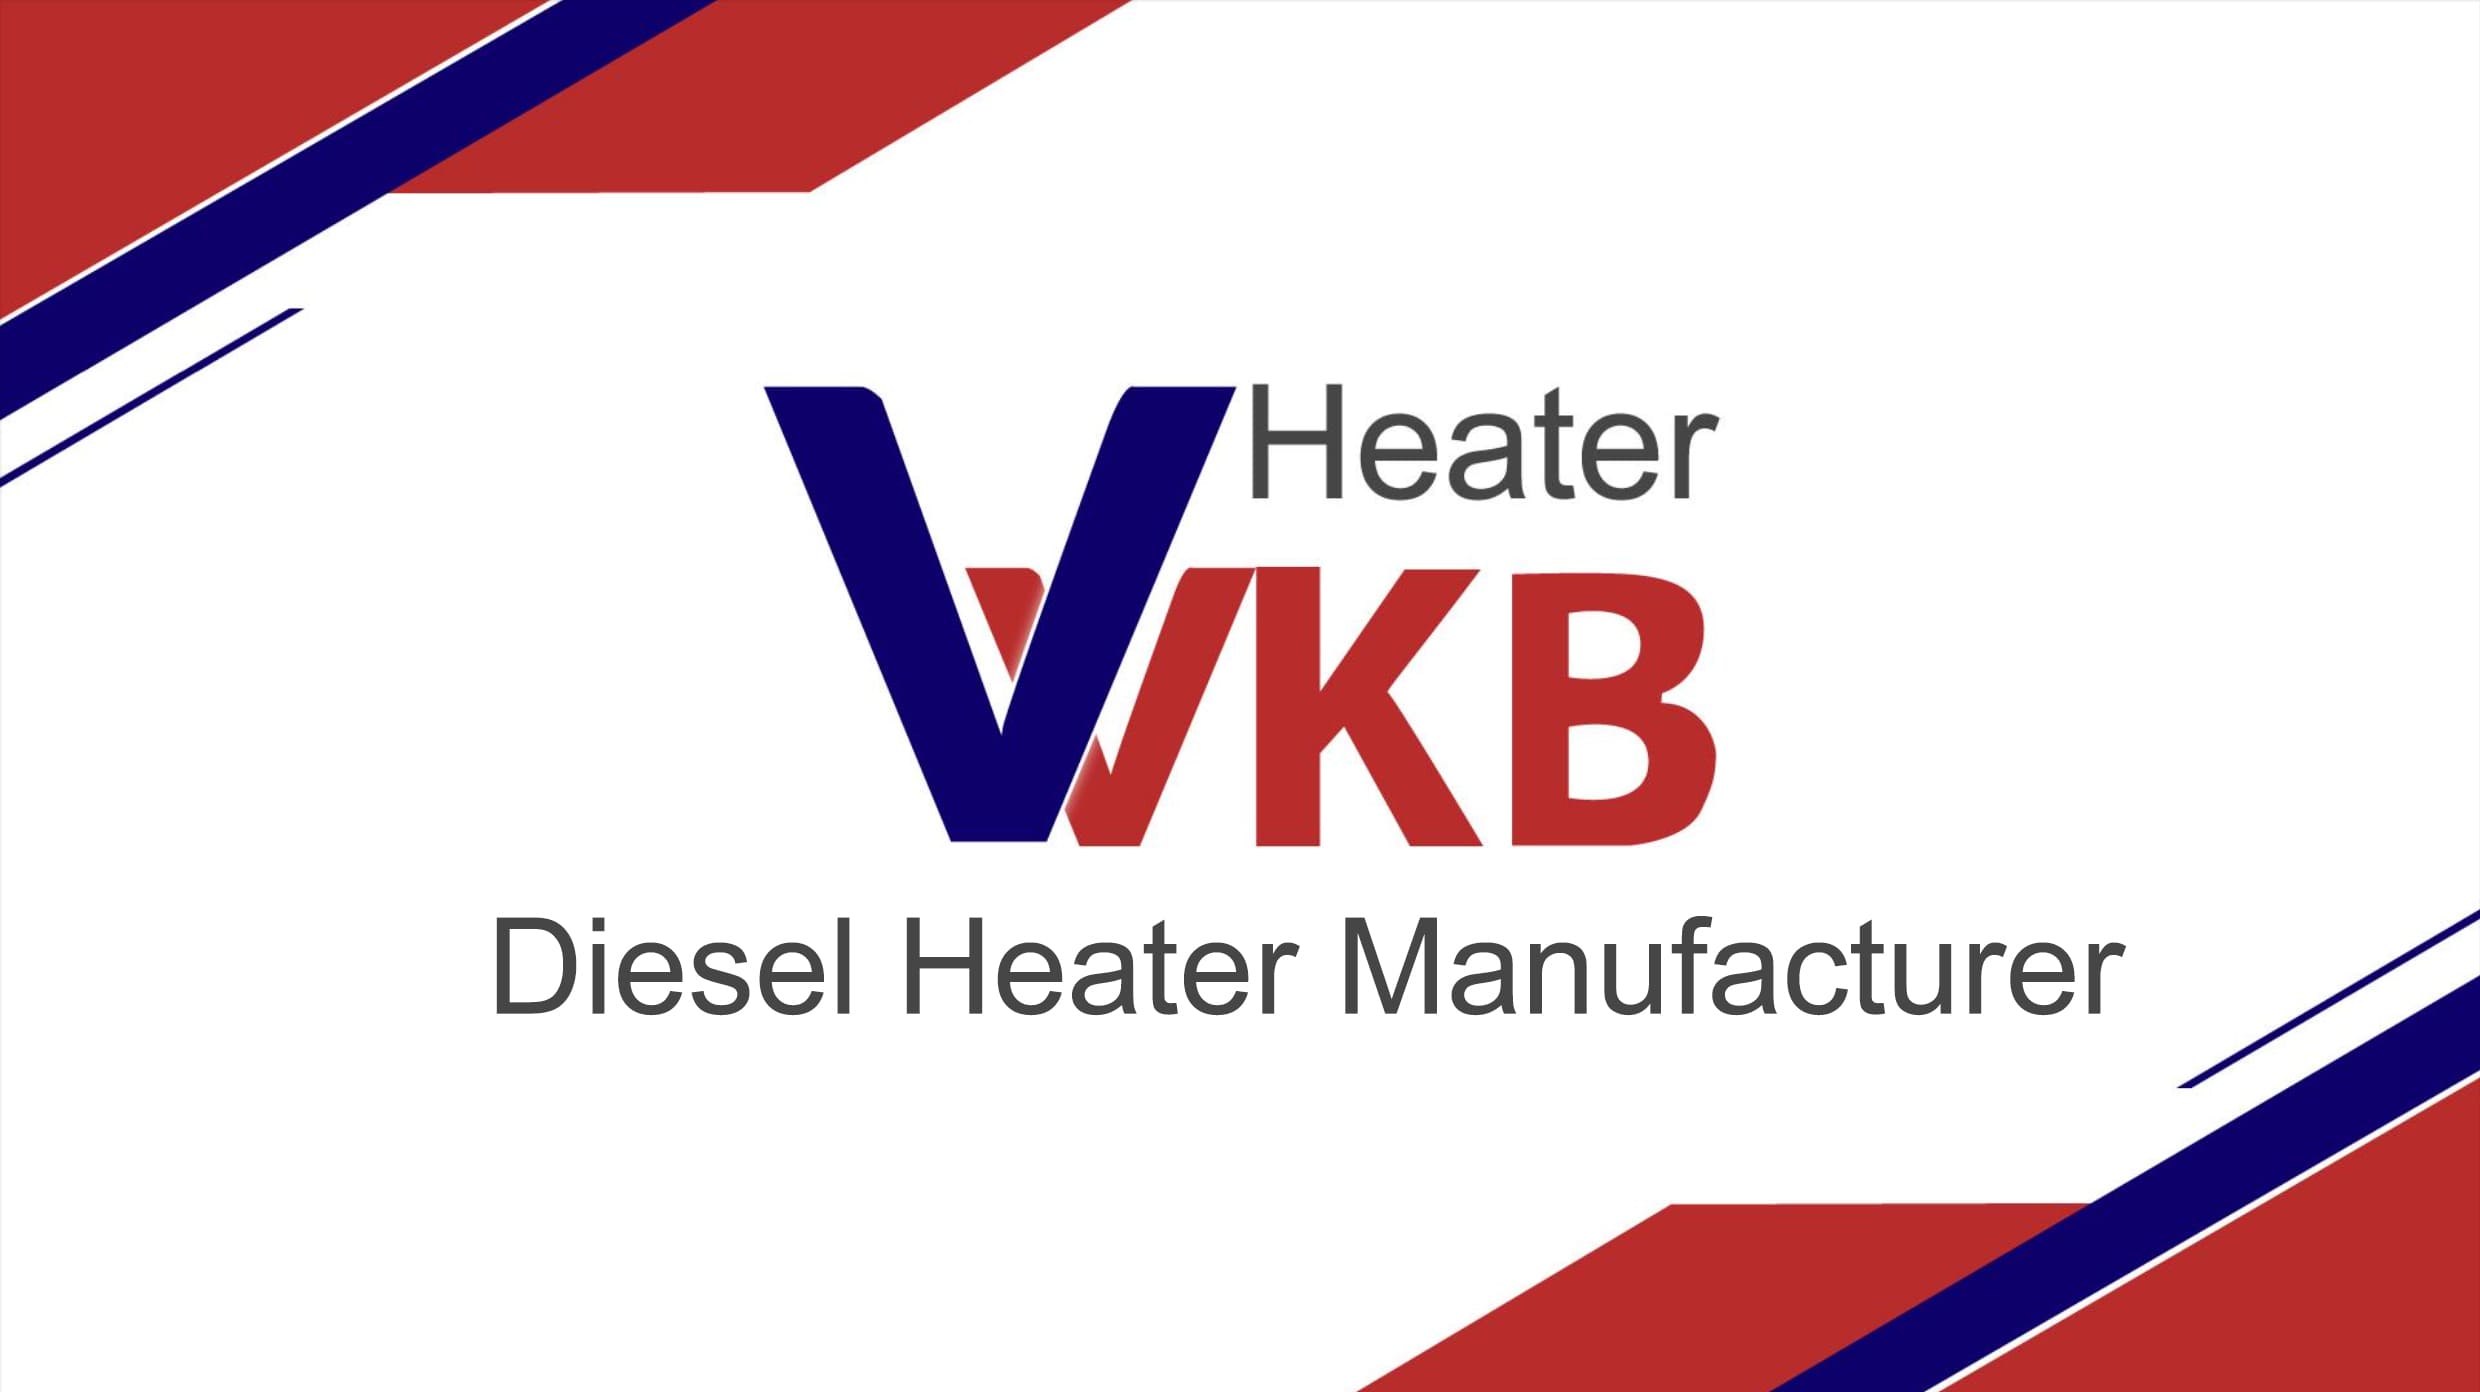 Diesel Heater Manufacturer